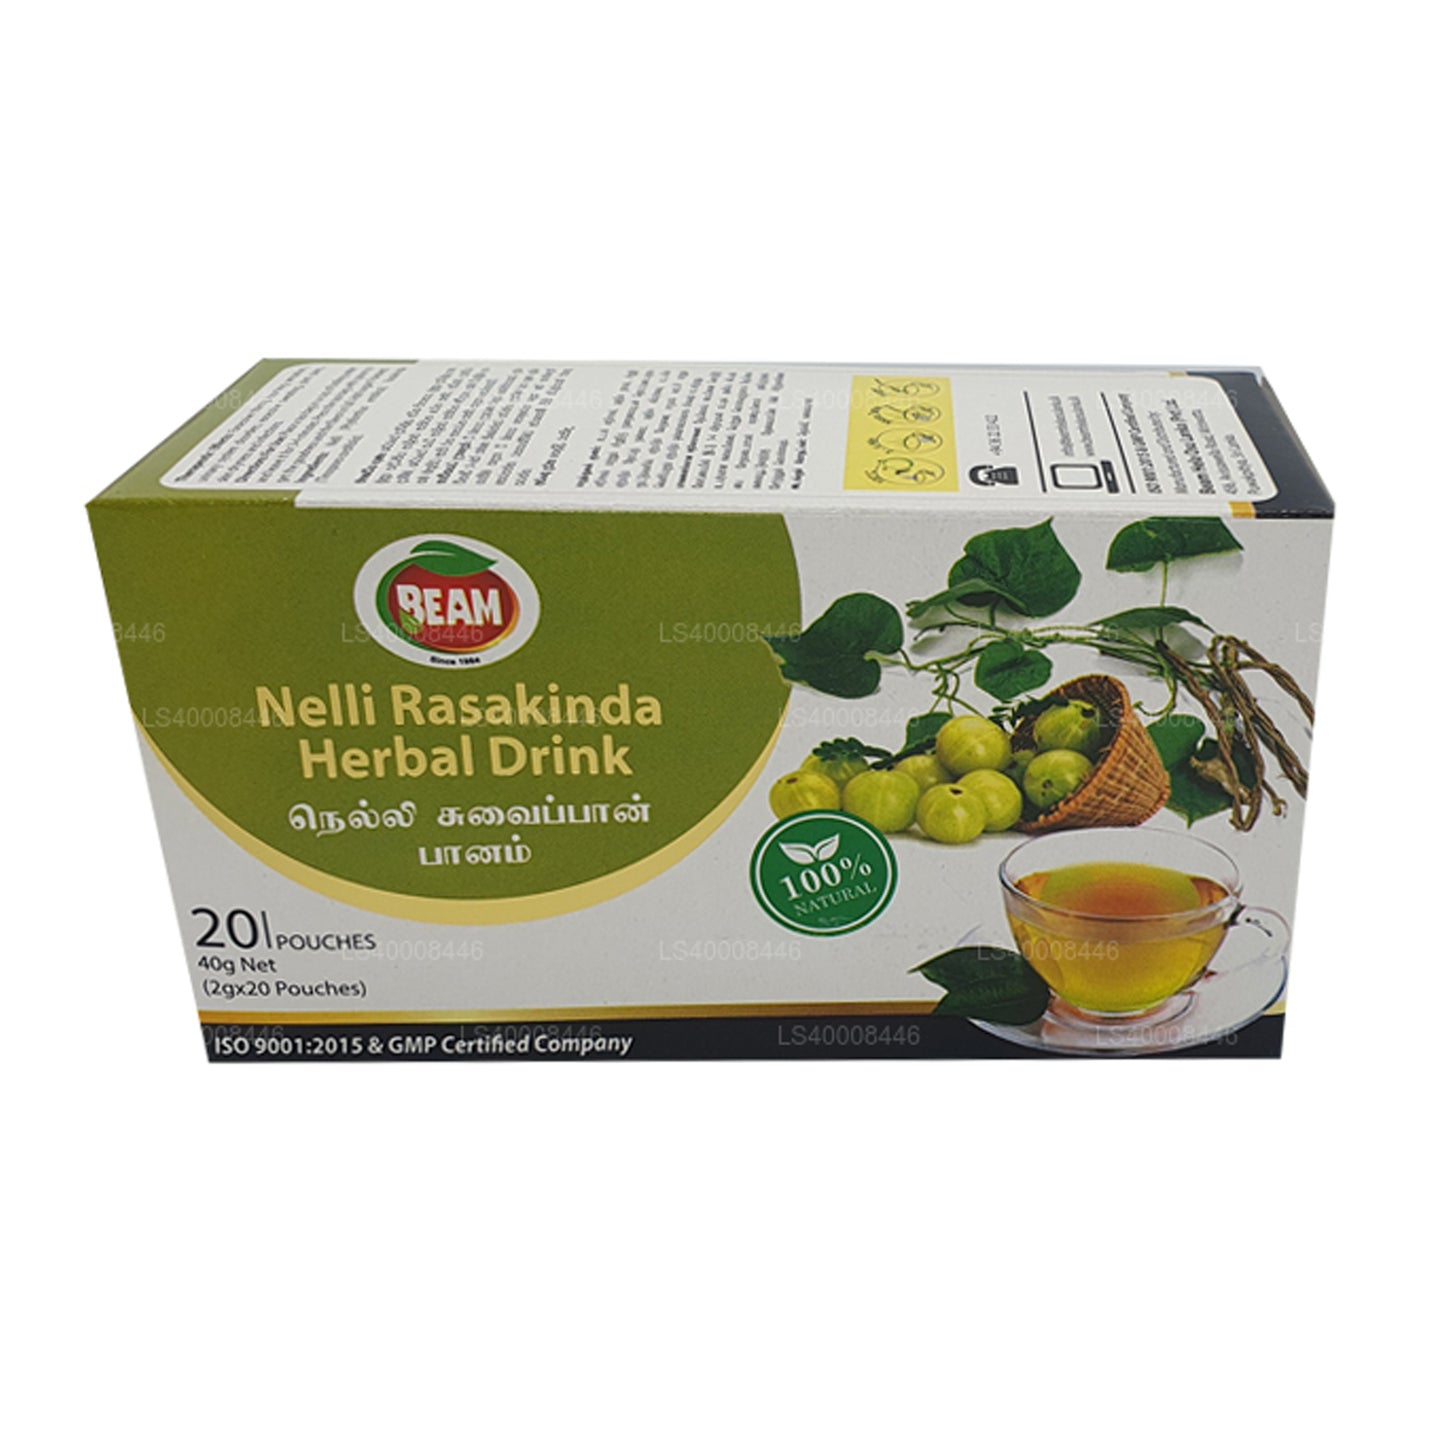 Beam Nelli Rasakinda Napój ziołowy (40g) 20 torebek herbaty